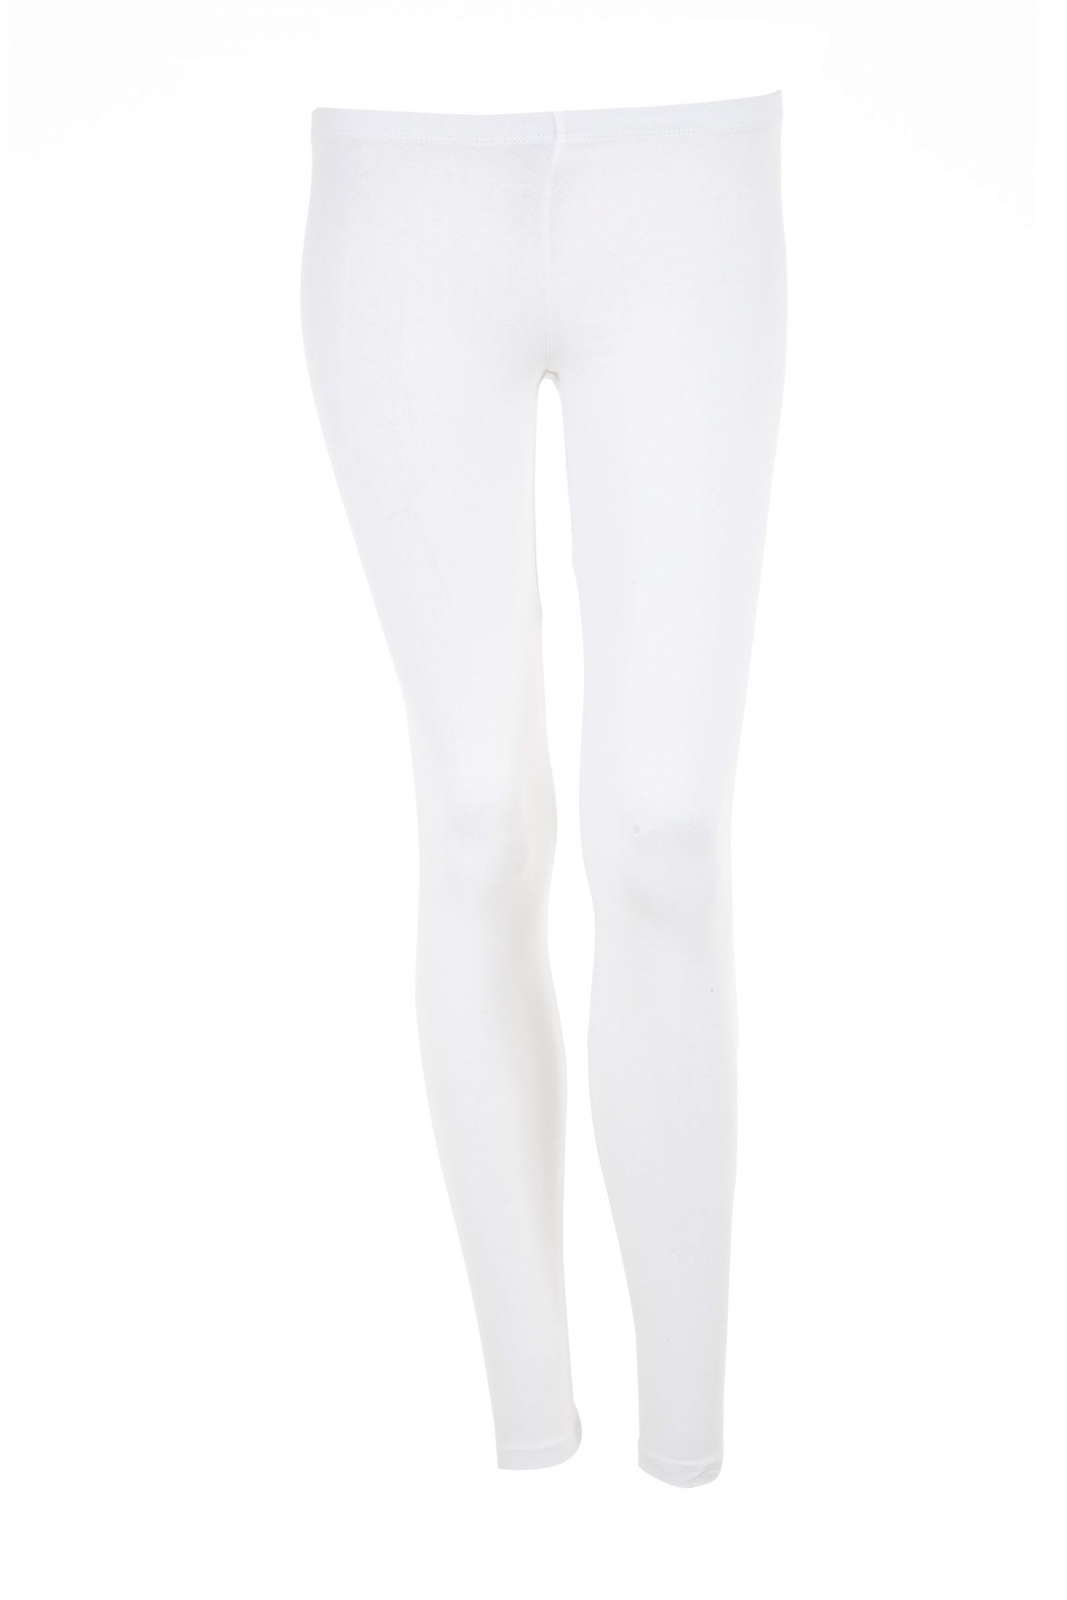 Terranova egyszínű fehér hosszú leggings 2015.02.28 #80370 fotója